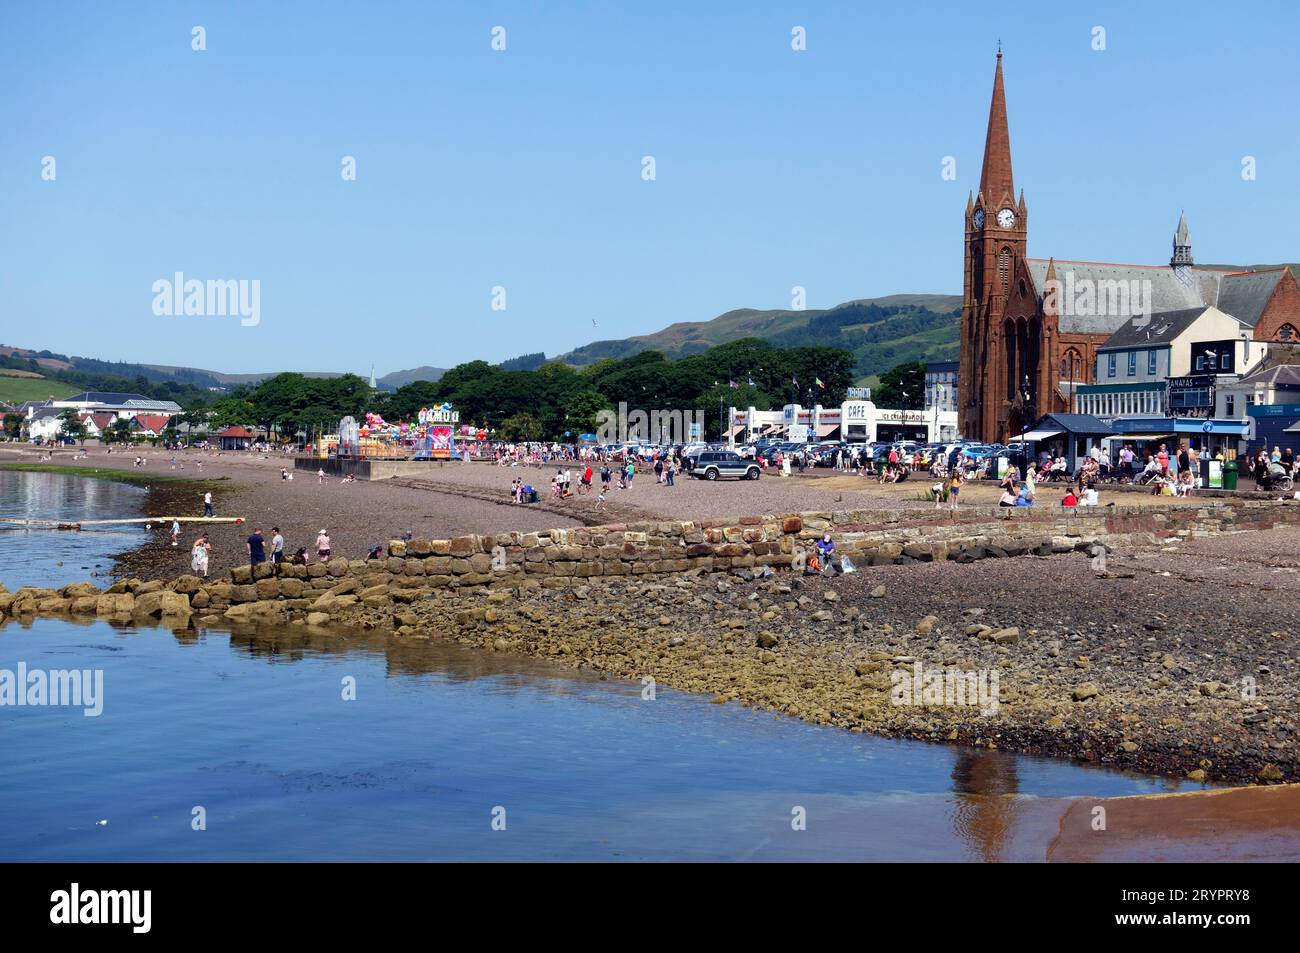 Spiaggia e passeggiata a Largs, una delle cittadine costiere della costa occidentale delle Scotlands Foto Stock